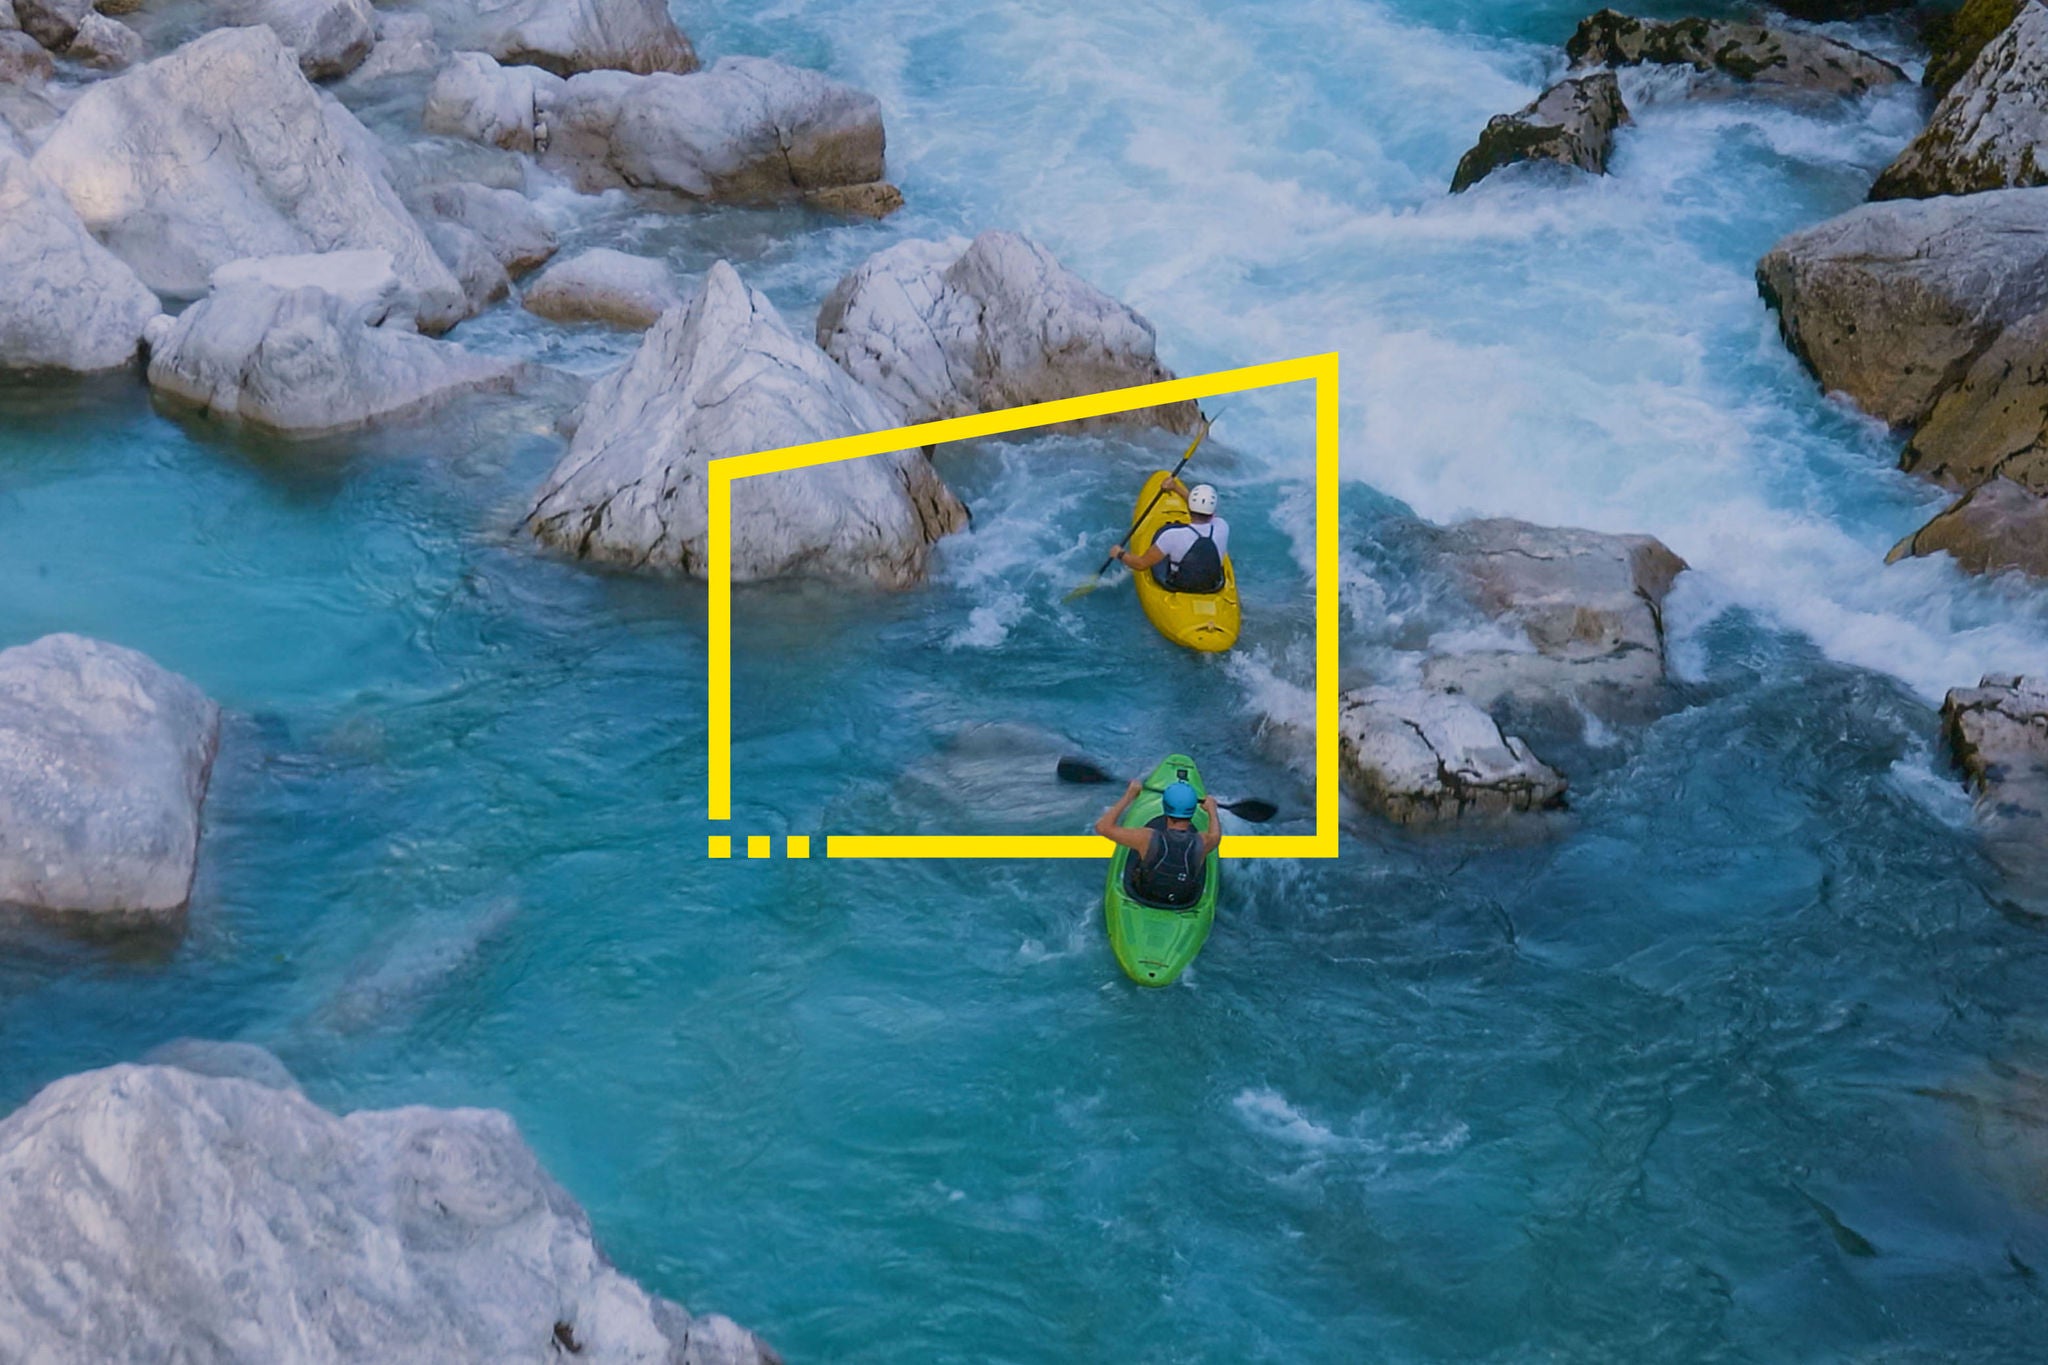 Two men kayaking through a river